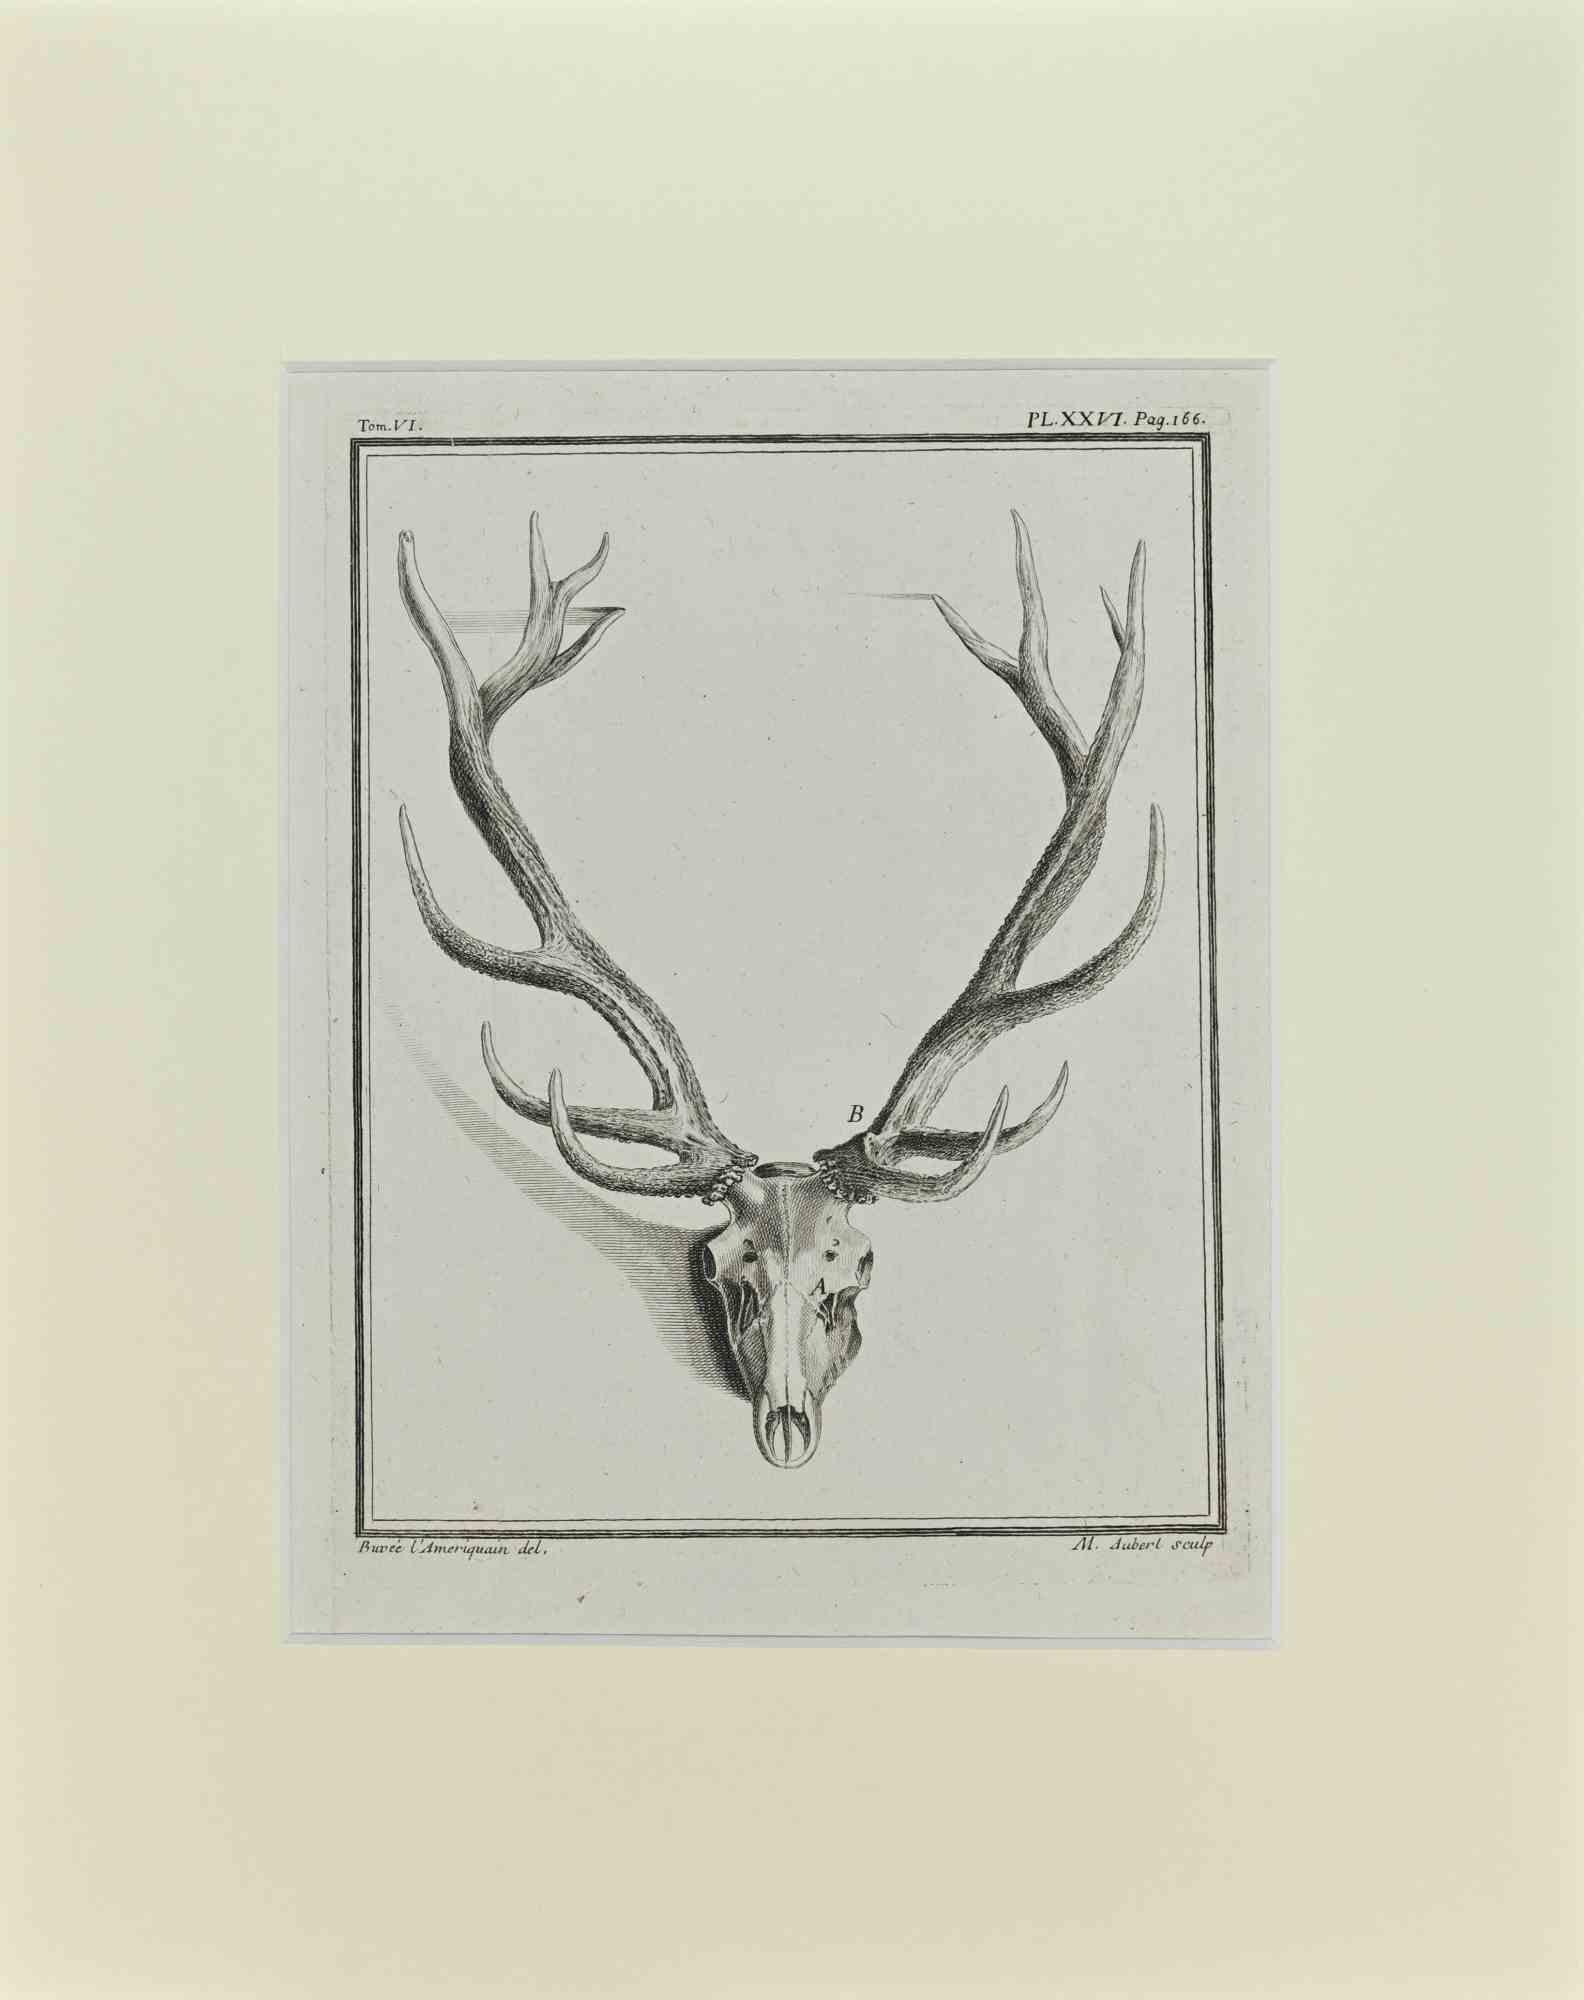 Deer Horns ist ein Kunstwerk von Buvée l'Américain aus dem Jahr 1771.  

Radierung B./W. Druck auf Elfenbeinpapier. Signiert auf der Platte am unteren linken Rand.

Das Werk ist auf Karton geklebt. Abmessungen insgesamt: 35x28 cm.

Das Kunstwerk